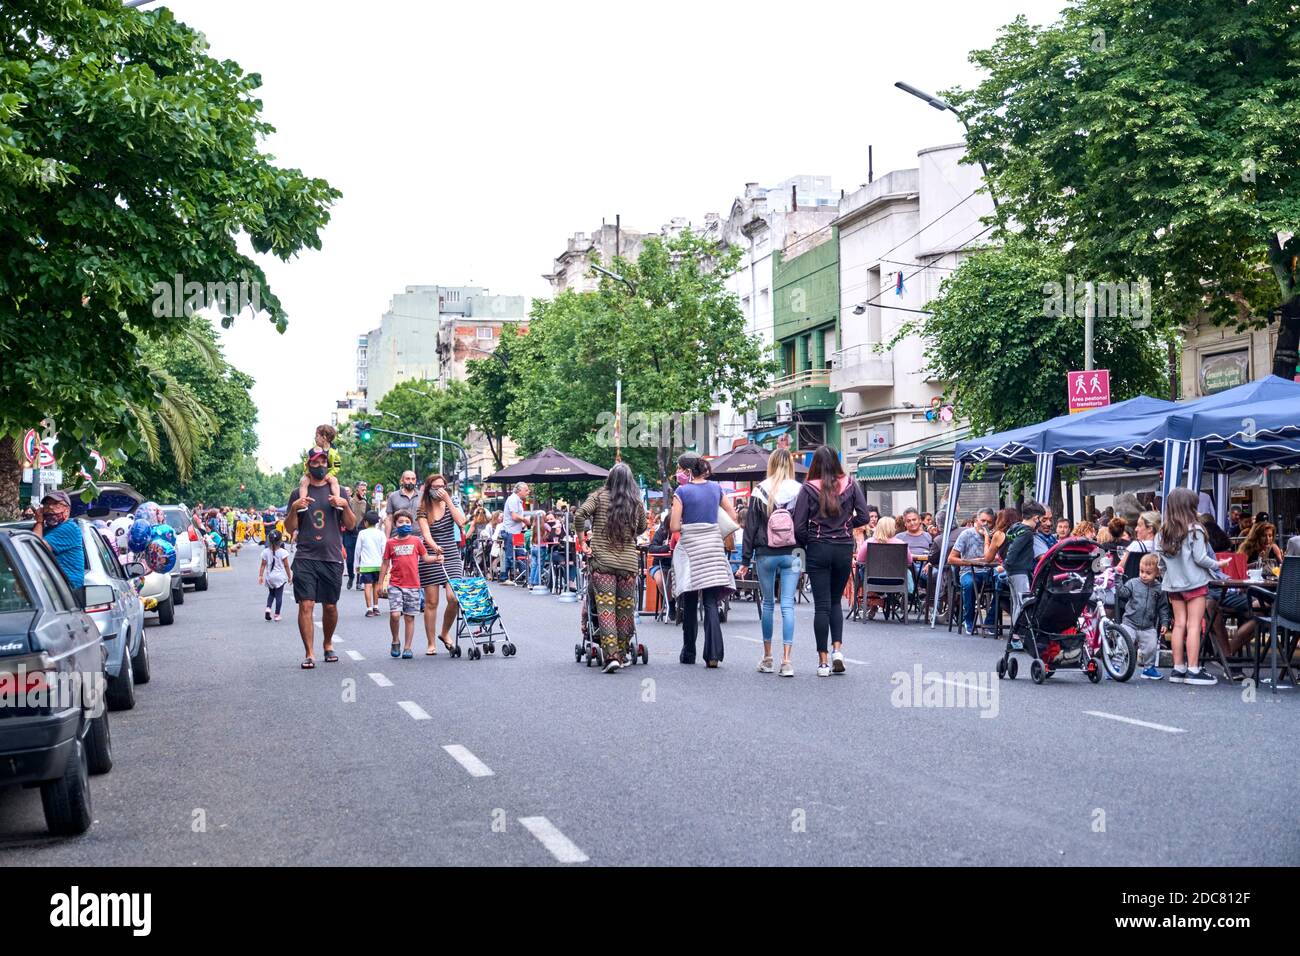 Buenos aires / Argentina; 14 de noviembre de 2020: Personas caminando por una calle peatonal temporal para facilitar la distancia social, para evitar el contagio de COV Foto de stock